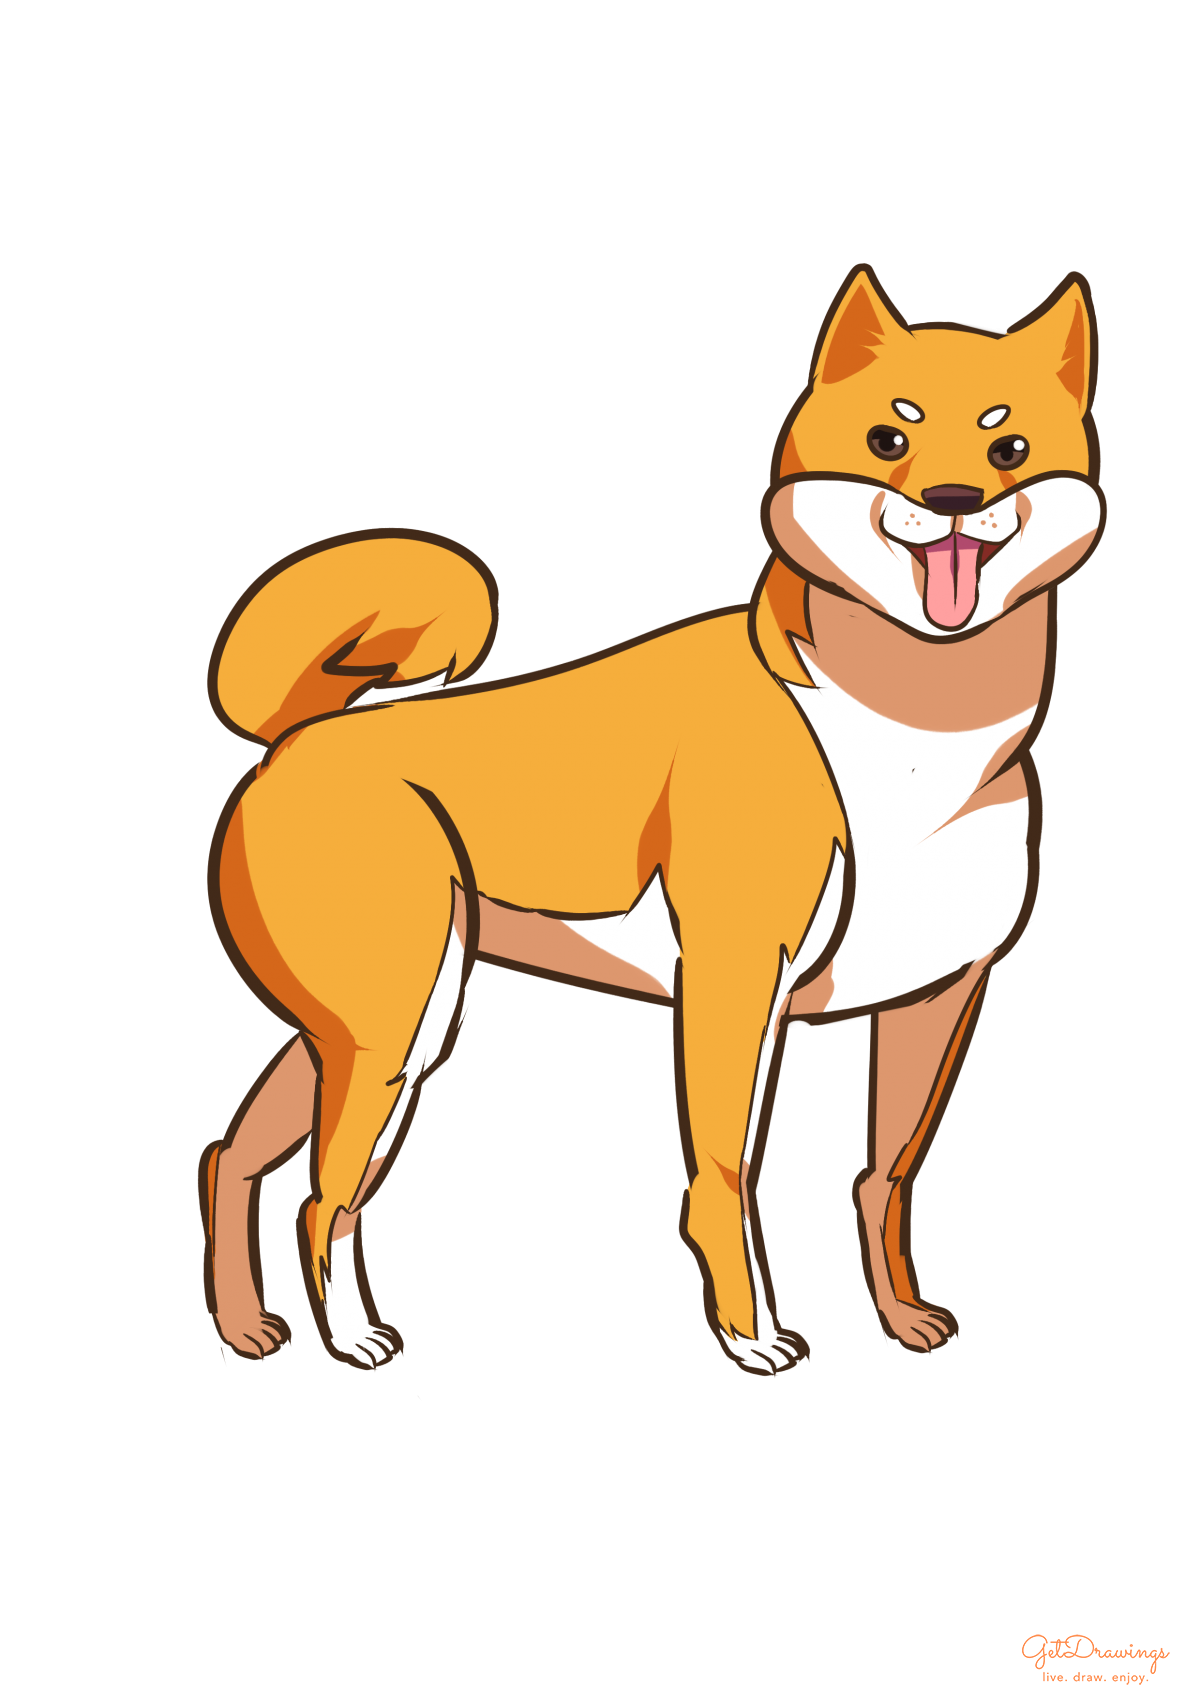 How to draw a Shiba Inu dog?